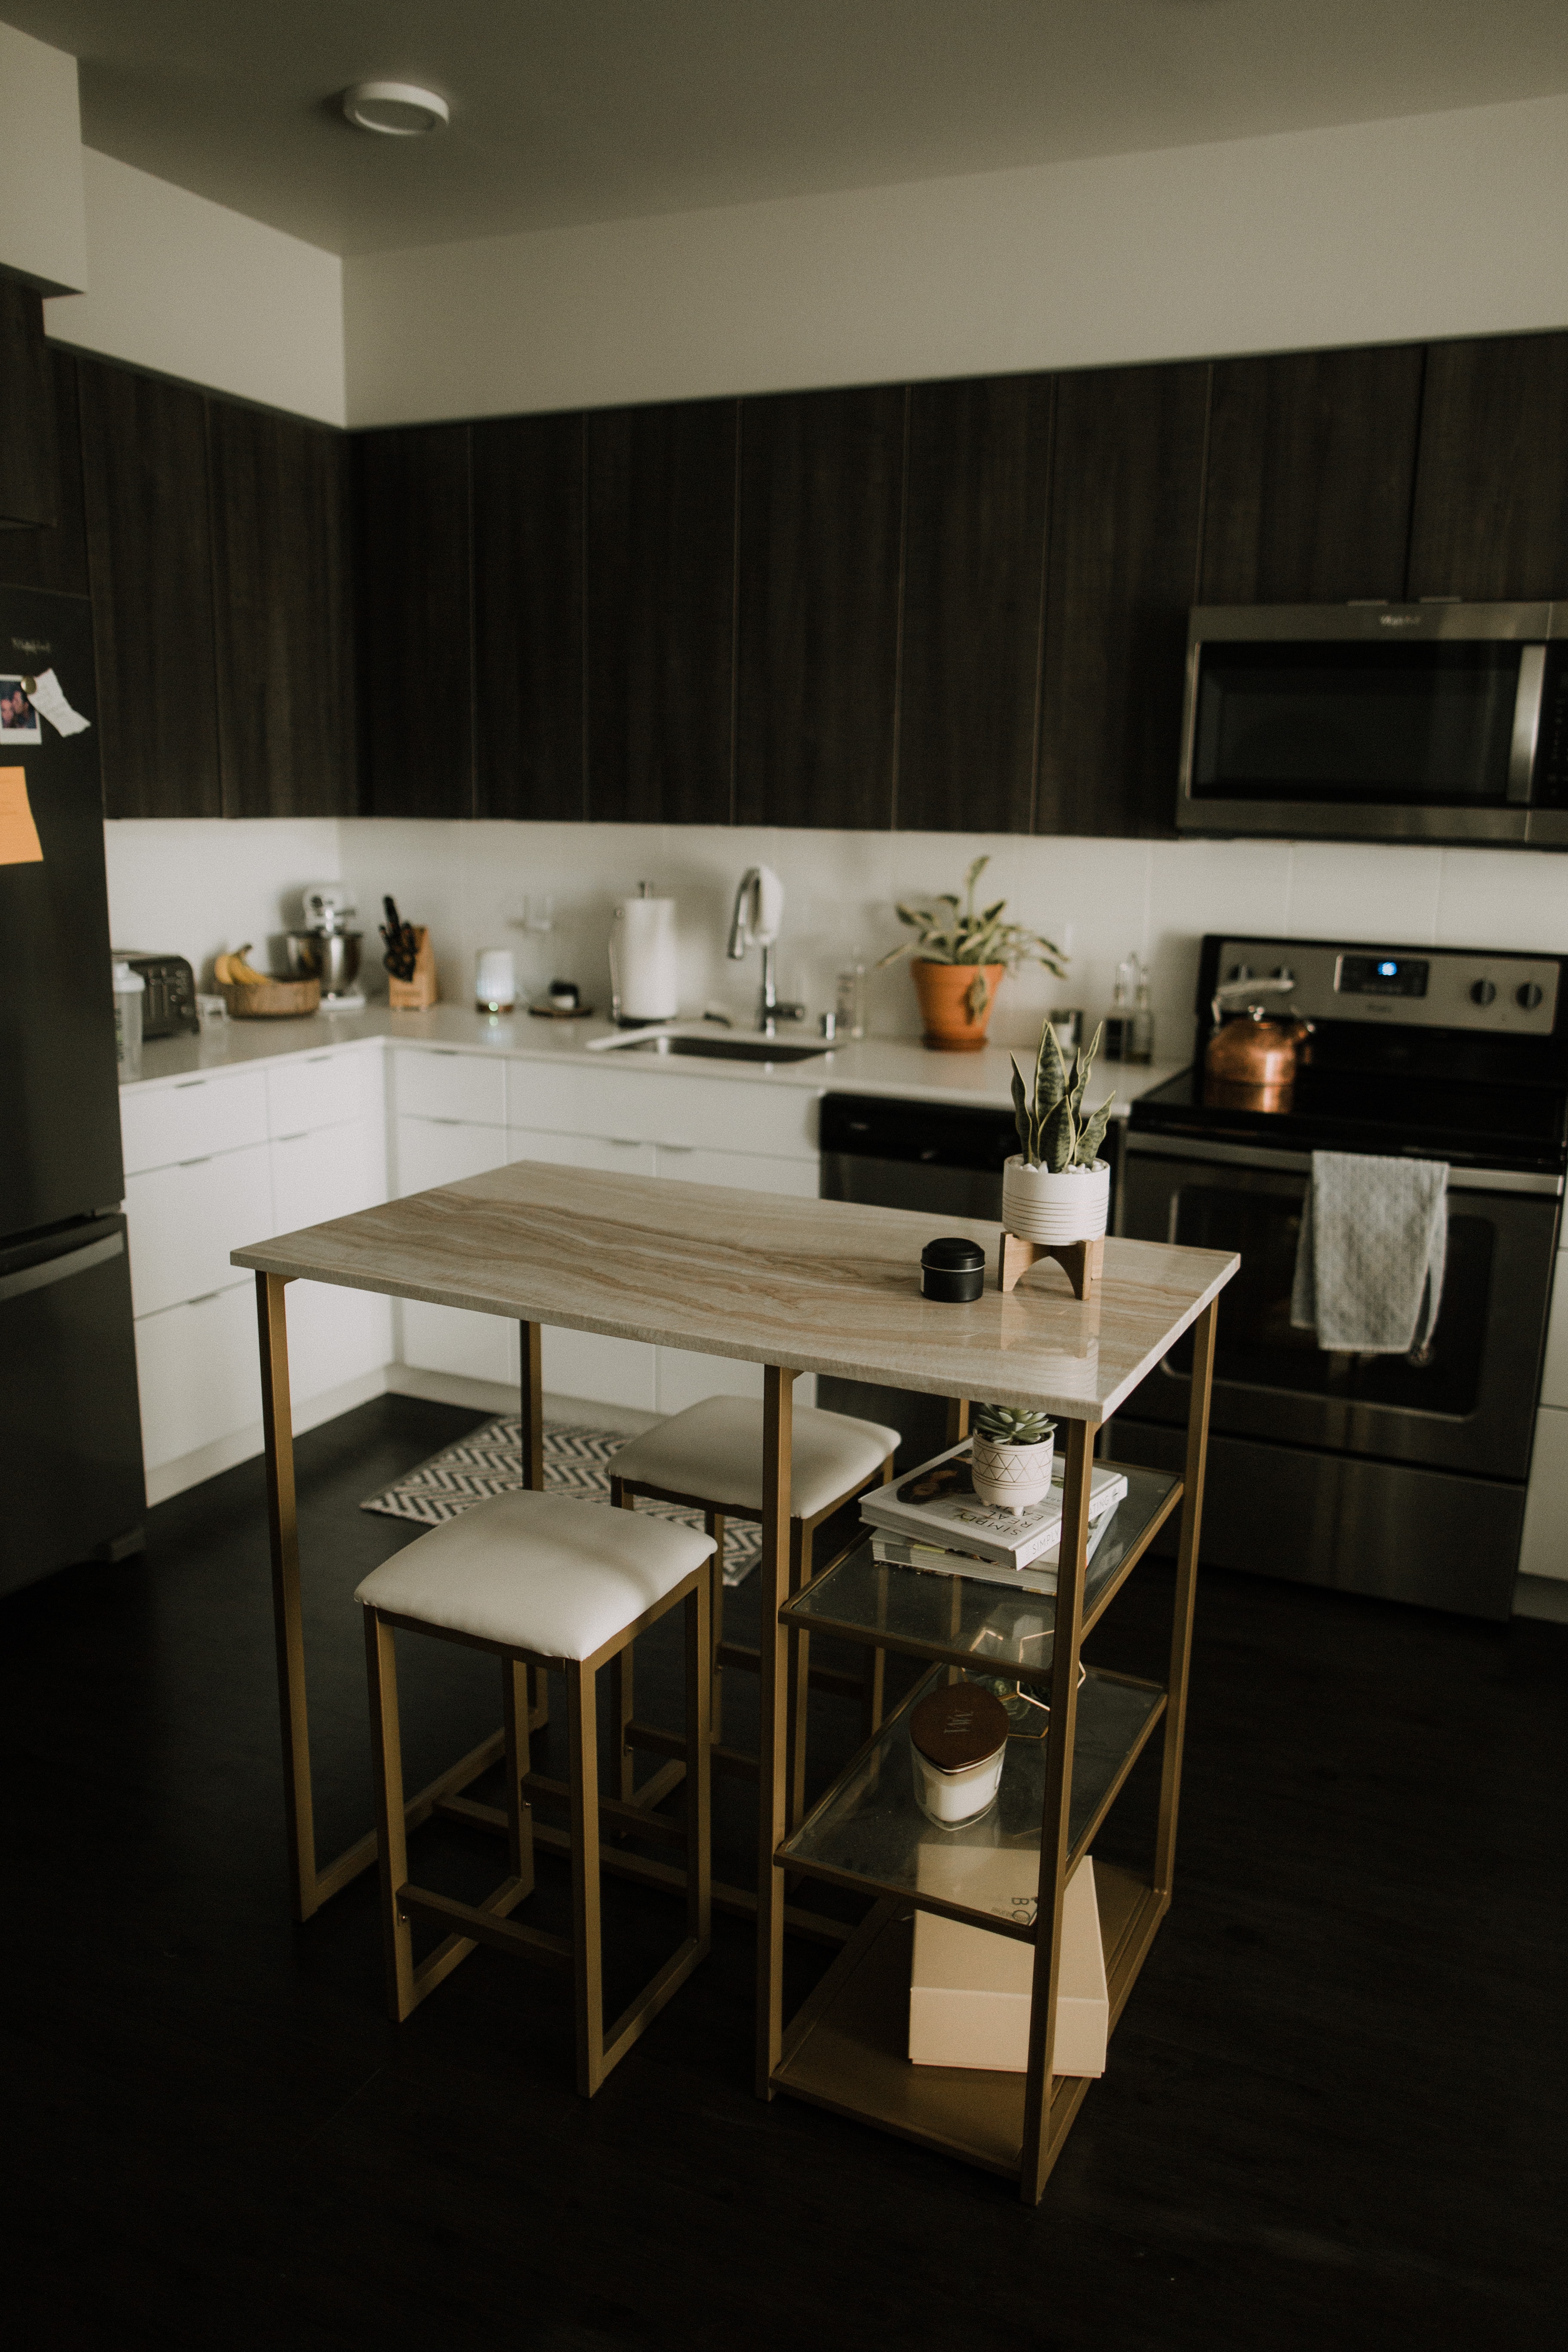 Ilustrasi kitchen set mewah dan elegan (Sumber gambar: Unsplash/Blake Carpenter)